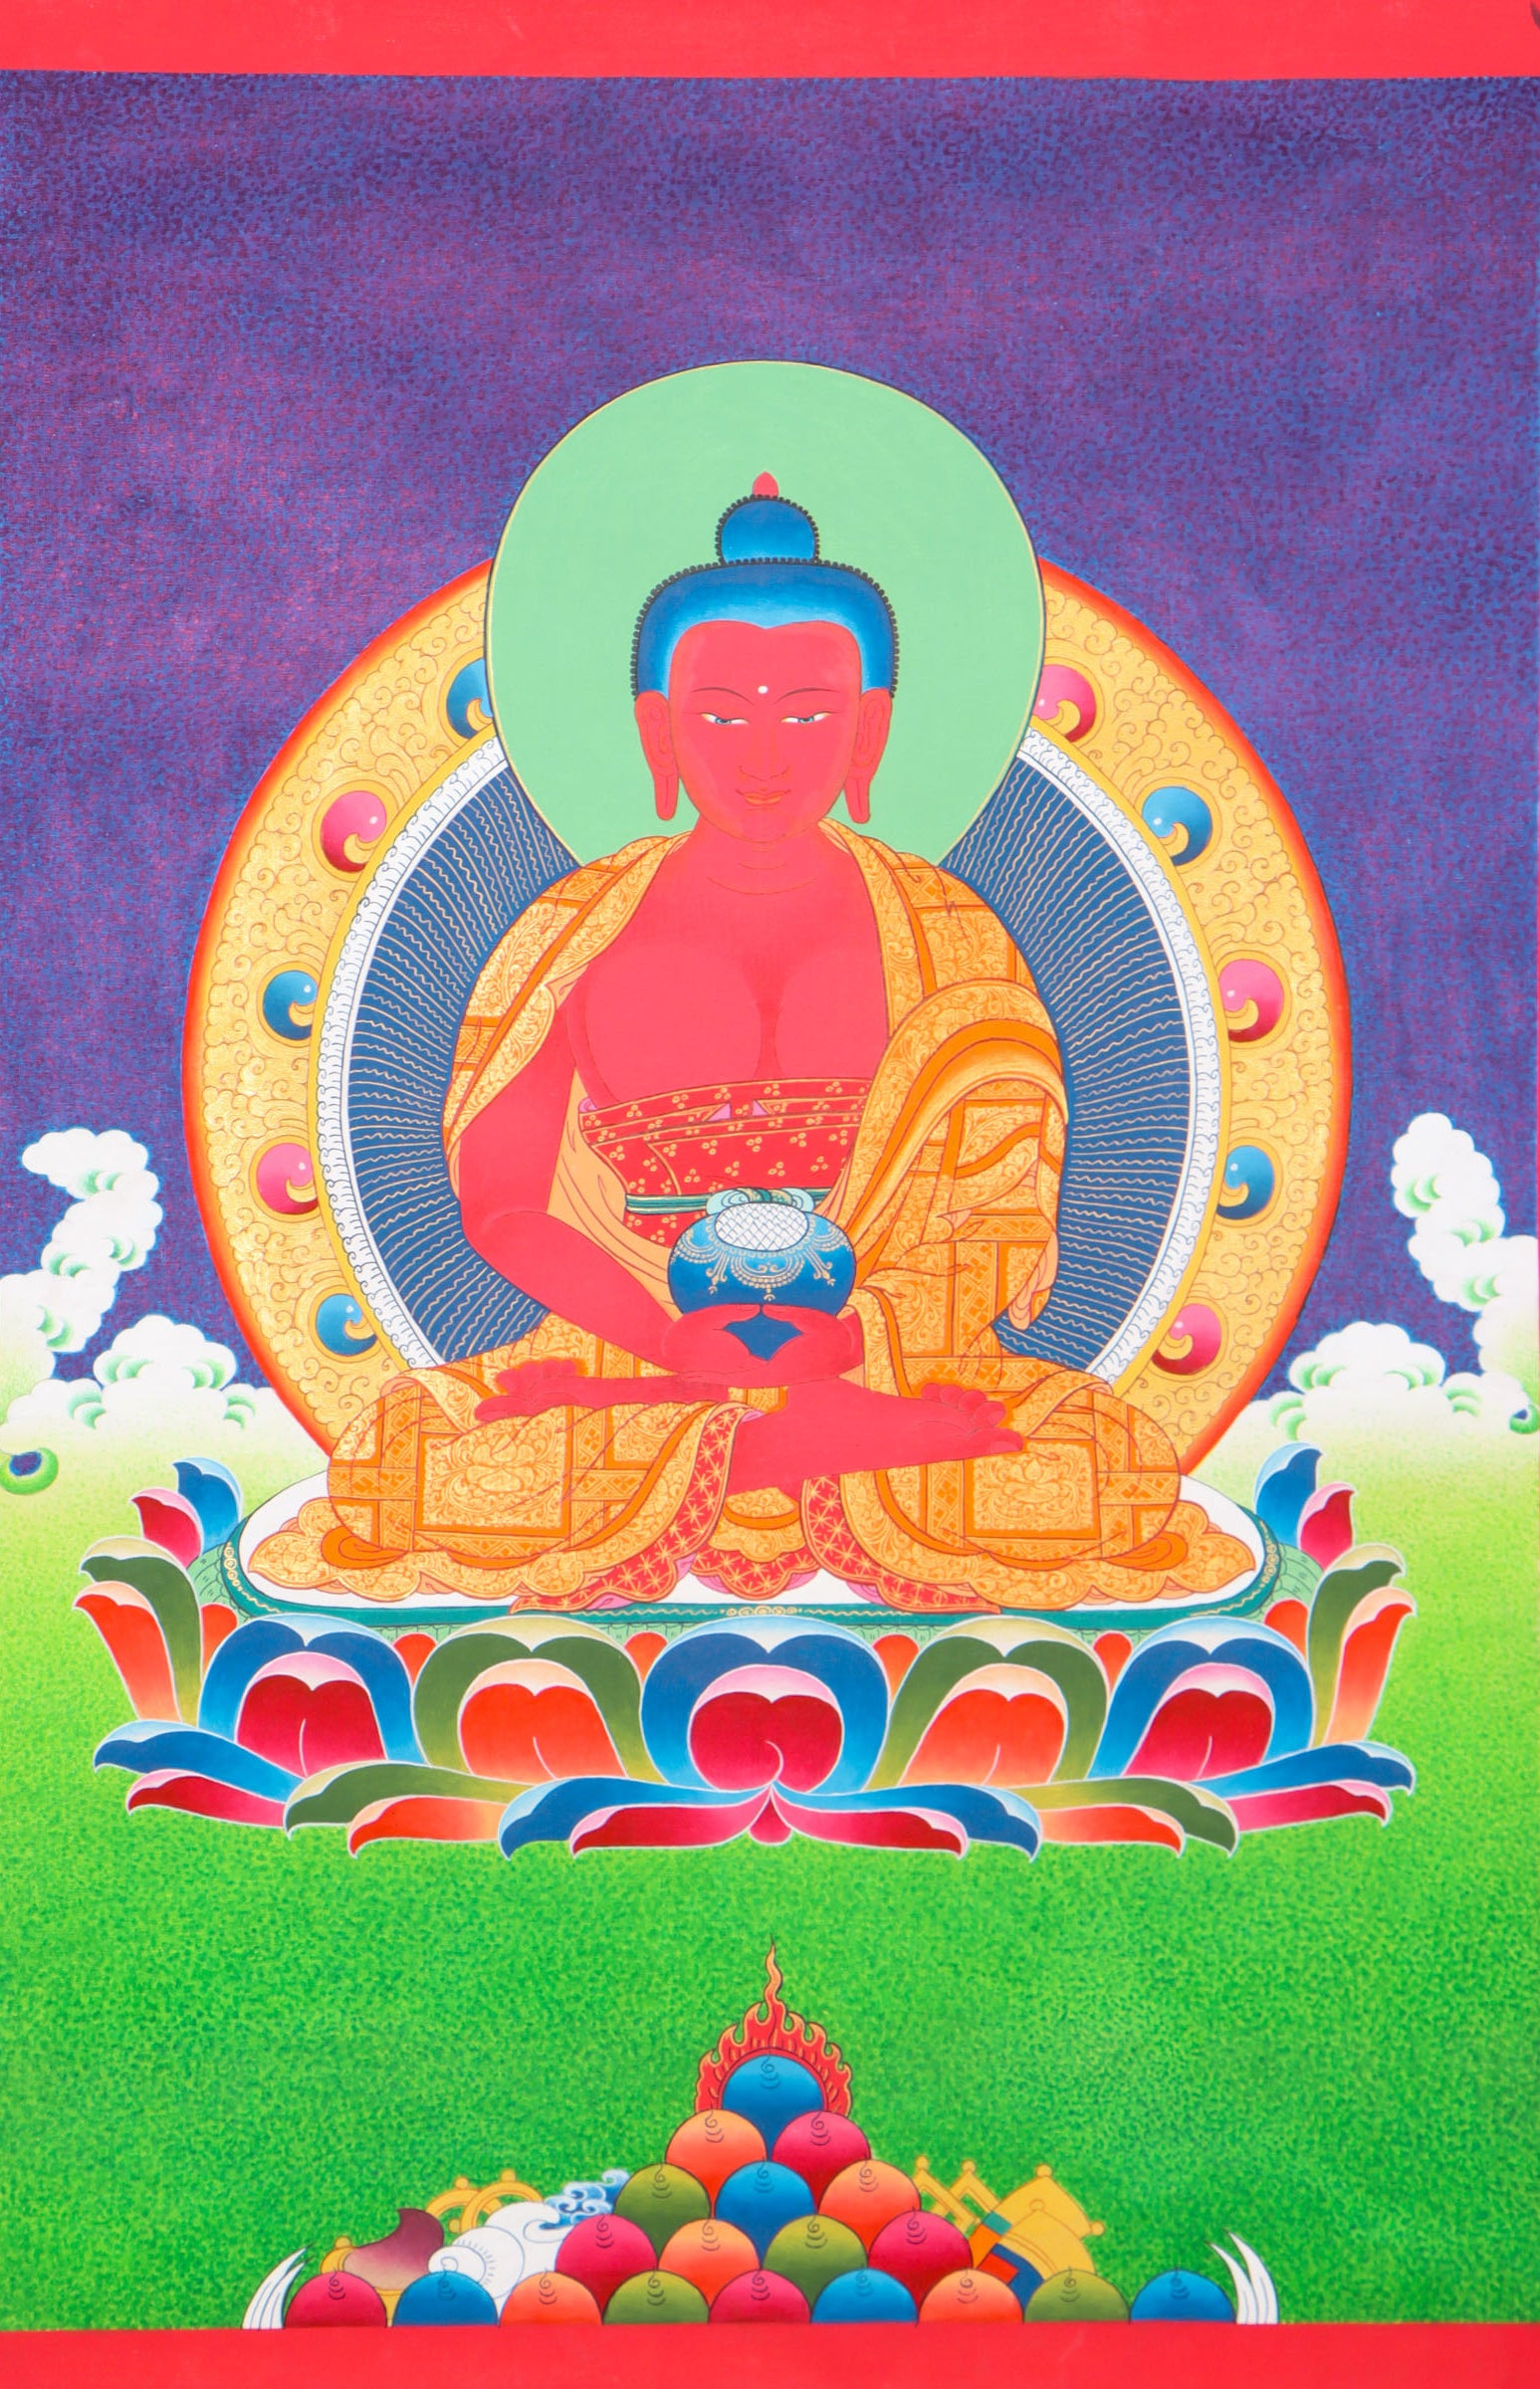 Amitabha Buddha Thangka for wall hanging and spiritual meditation practice.